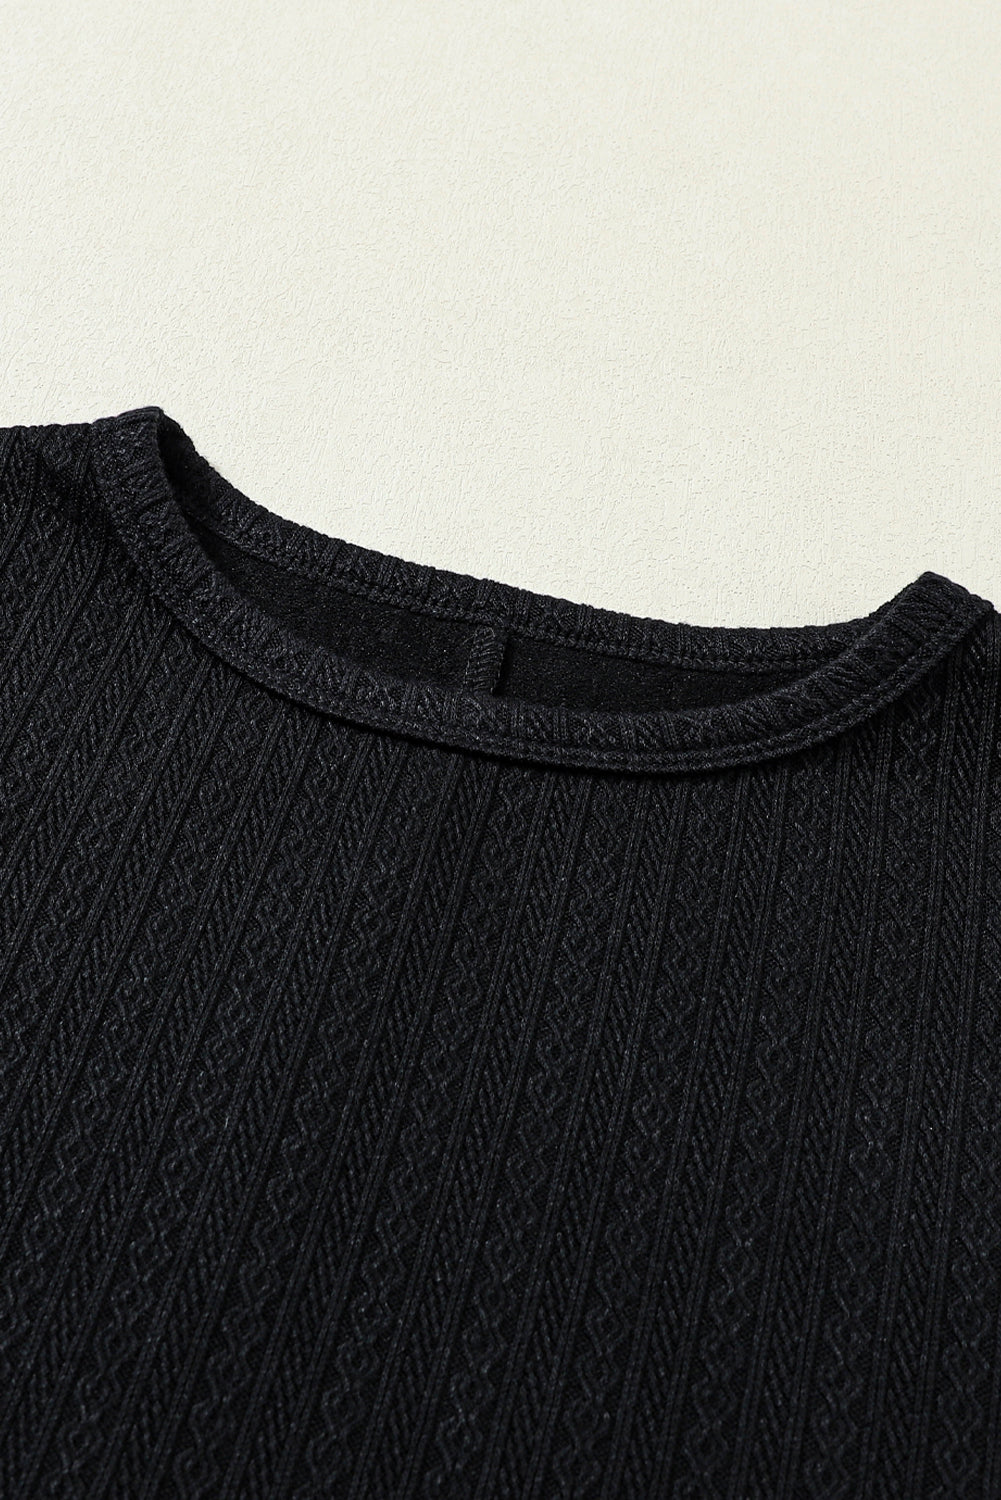 Haut noir à manches longues bouffantes en jacquard imitation tricot